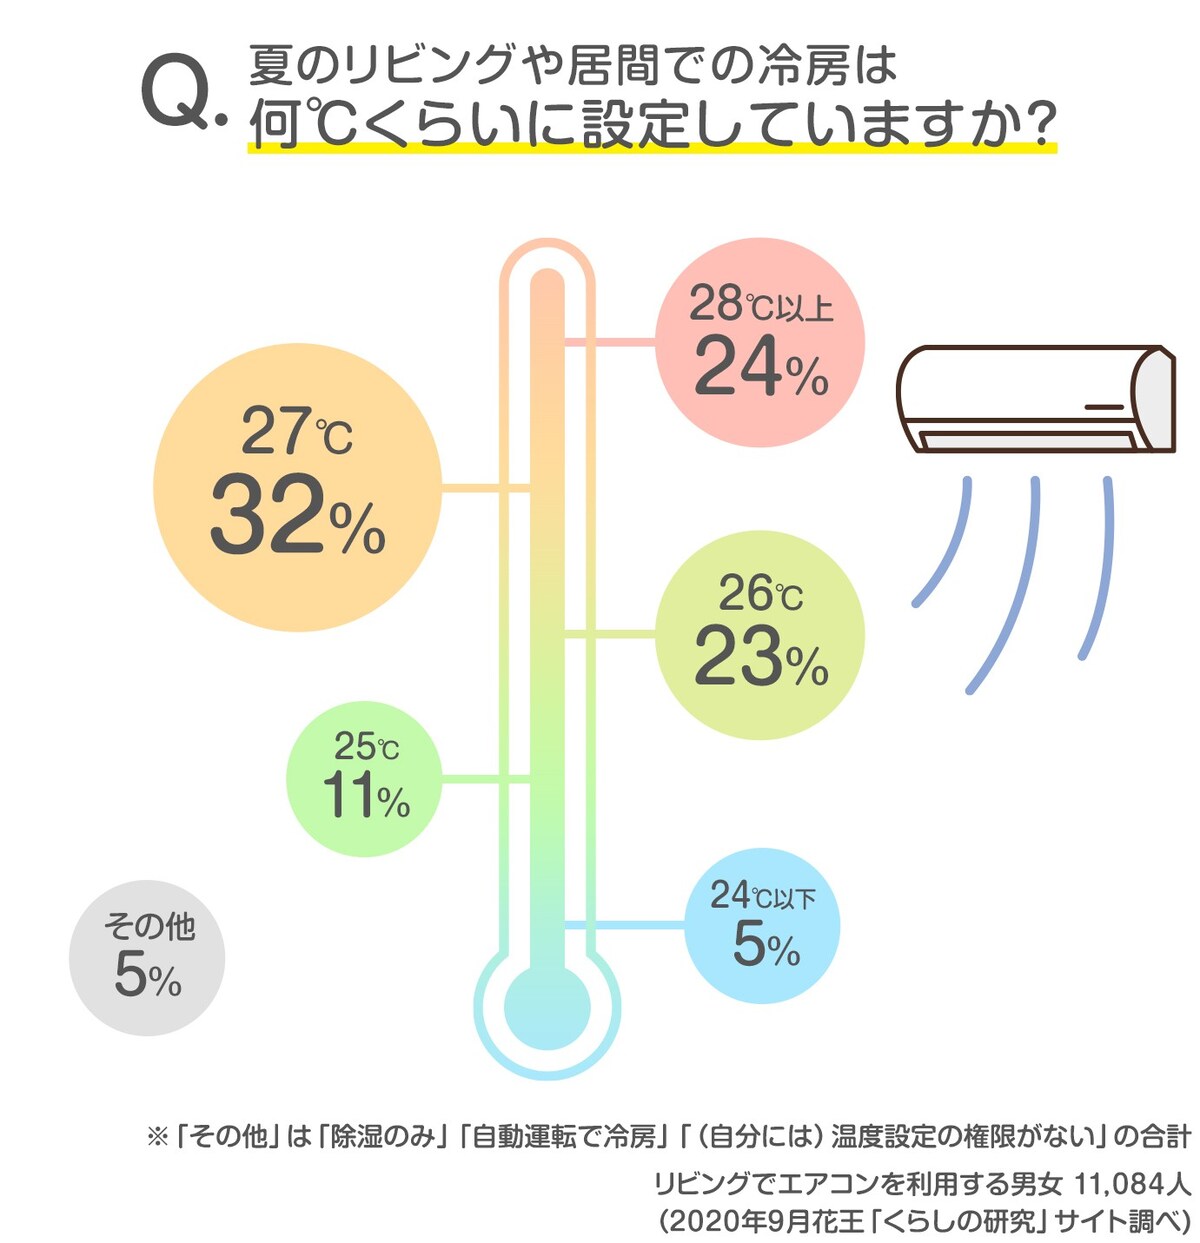 エアコンの設定温度は何℃ぐらいに設定していますか？